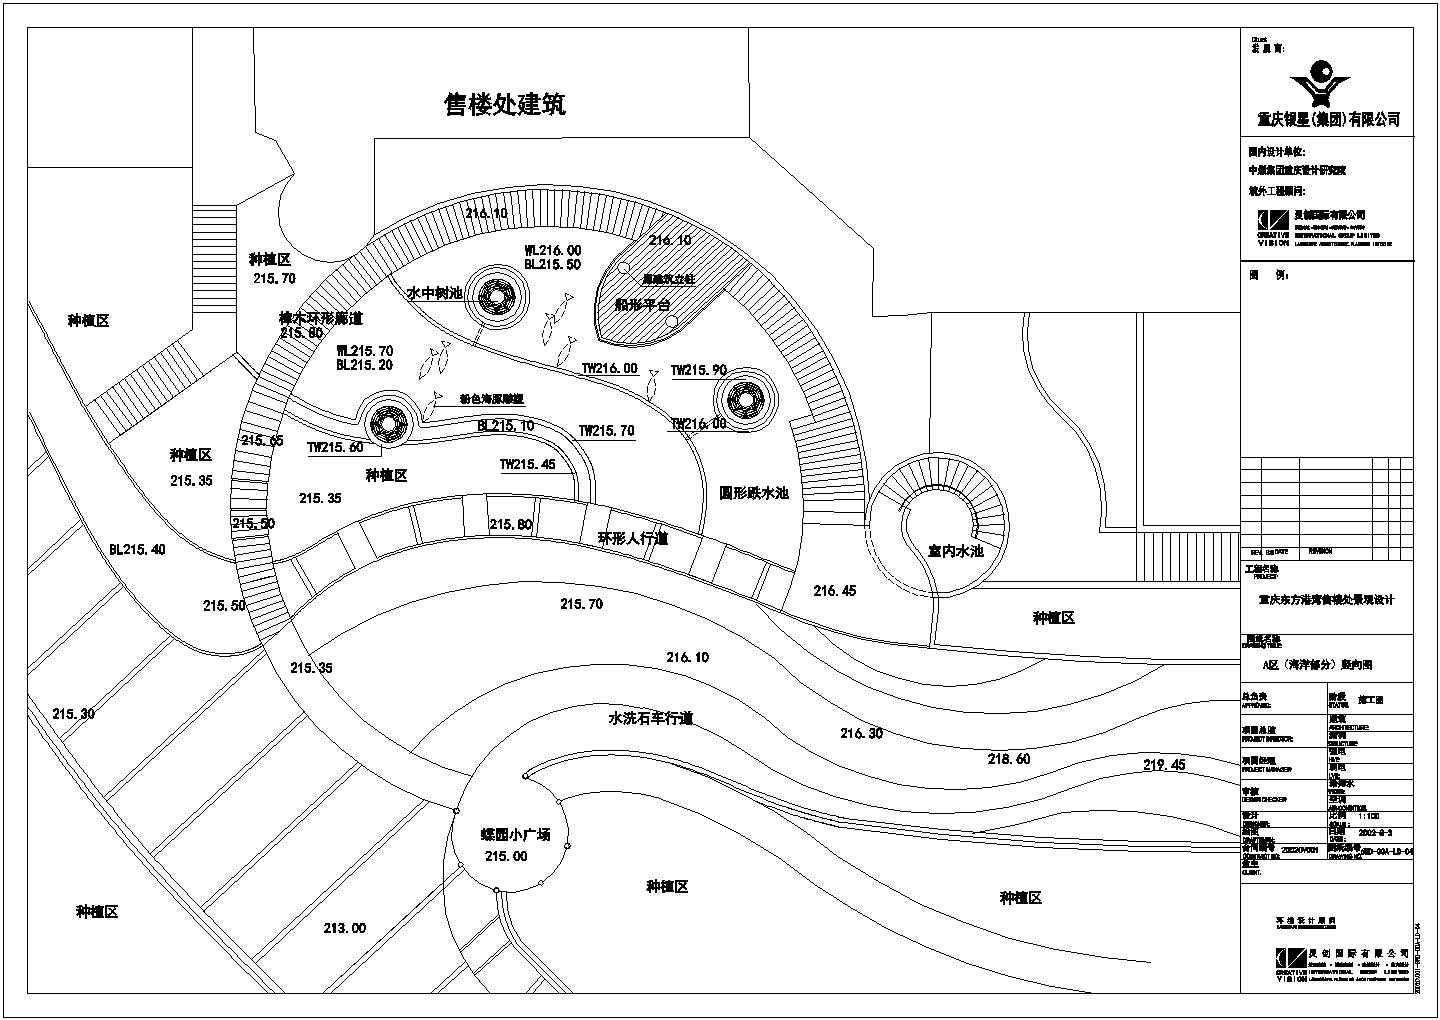 重庆某居住区售楼处全套景观设计施工图